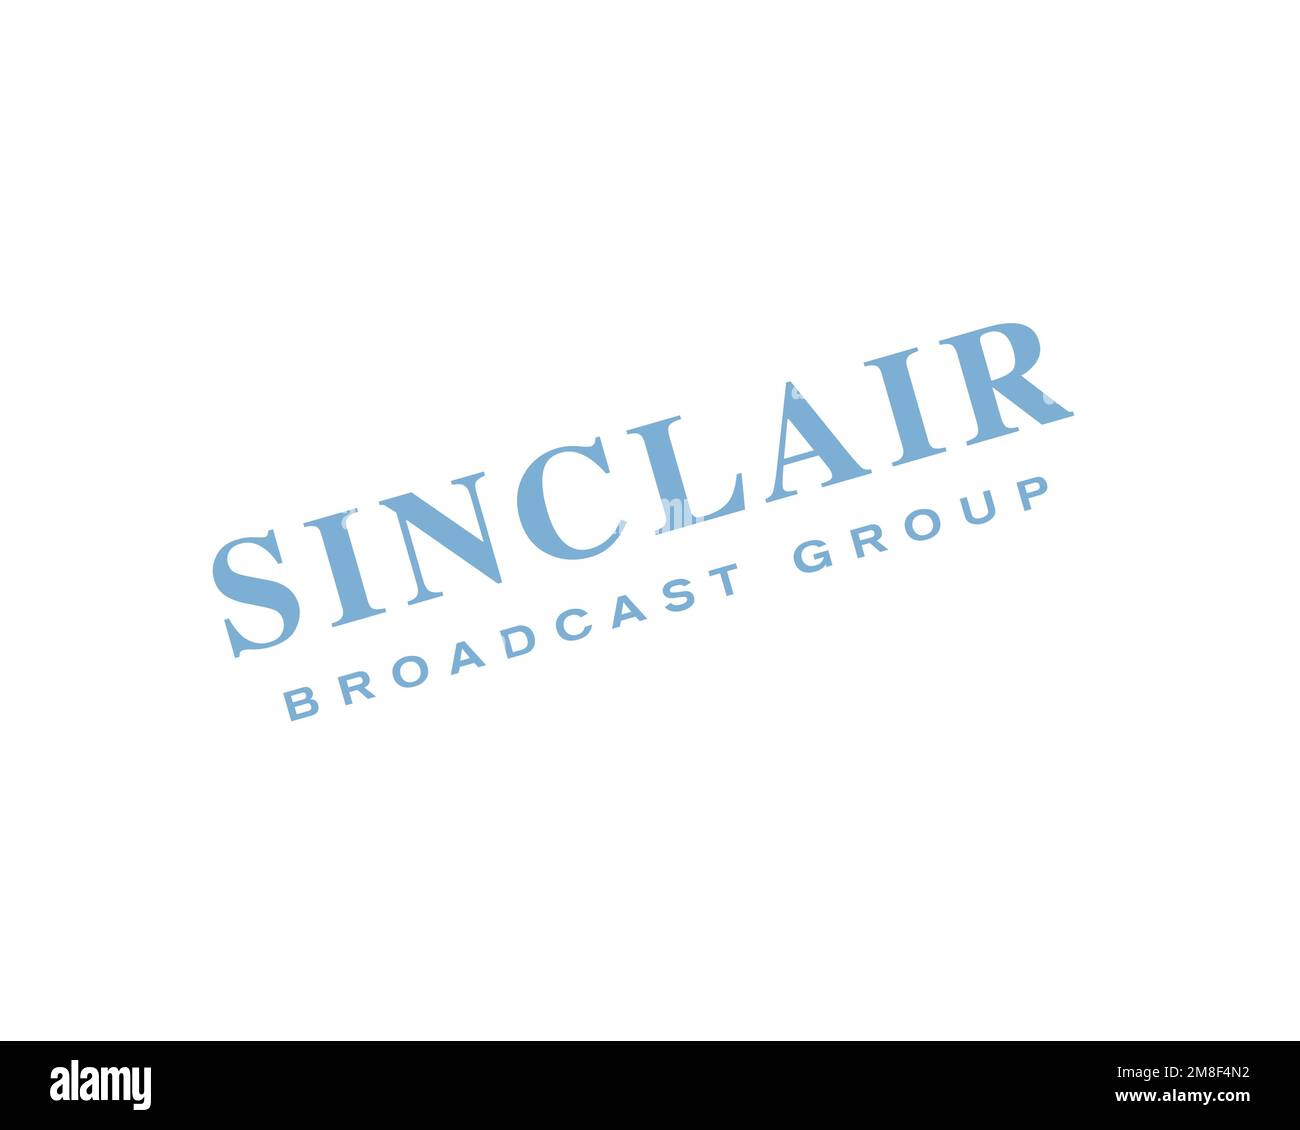 Sinclair Broadcast Group, gedrehtes Logo, weißer Hintergrund Stockfoto